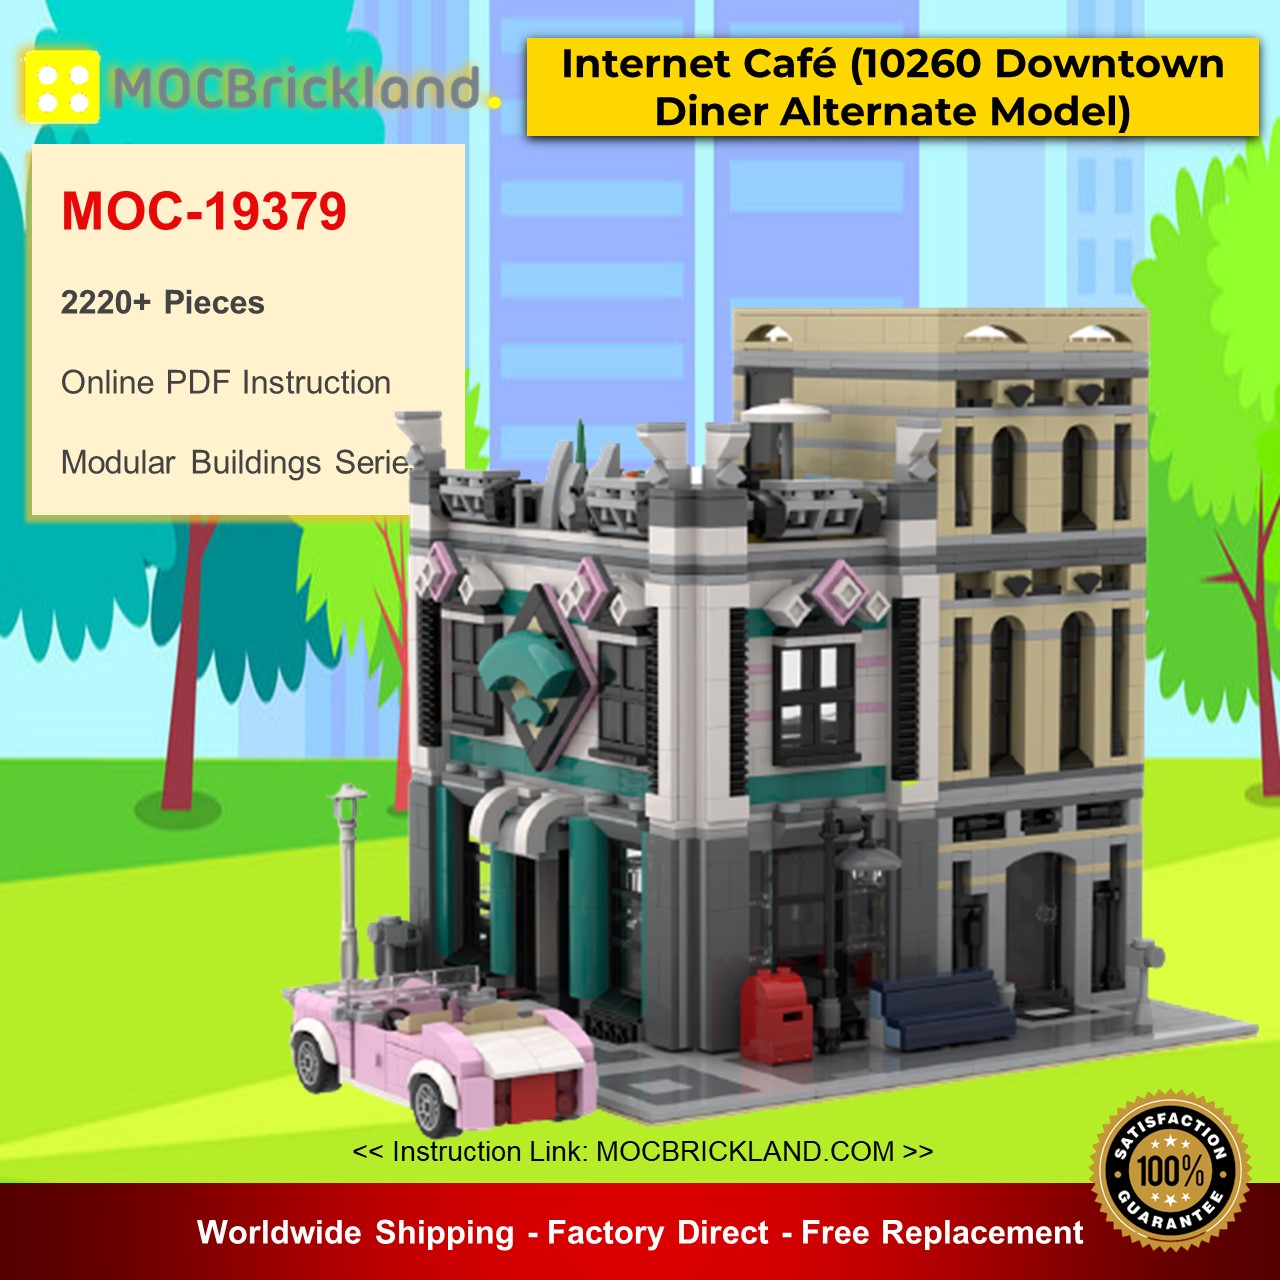 modular building moc 19379 internet caf 10260 downtown diner alternate model modular by huaojozu mocbrickland 8310